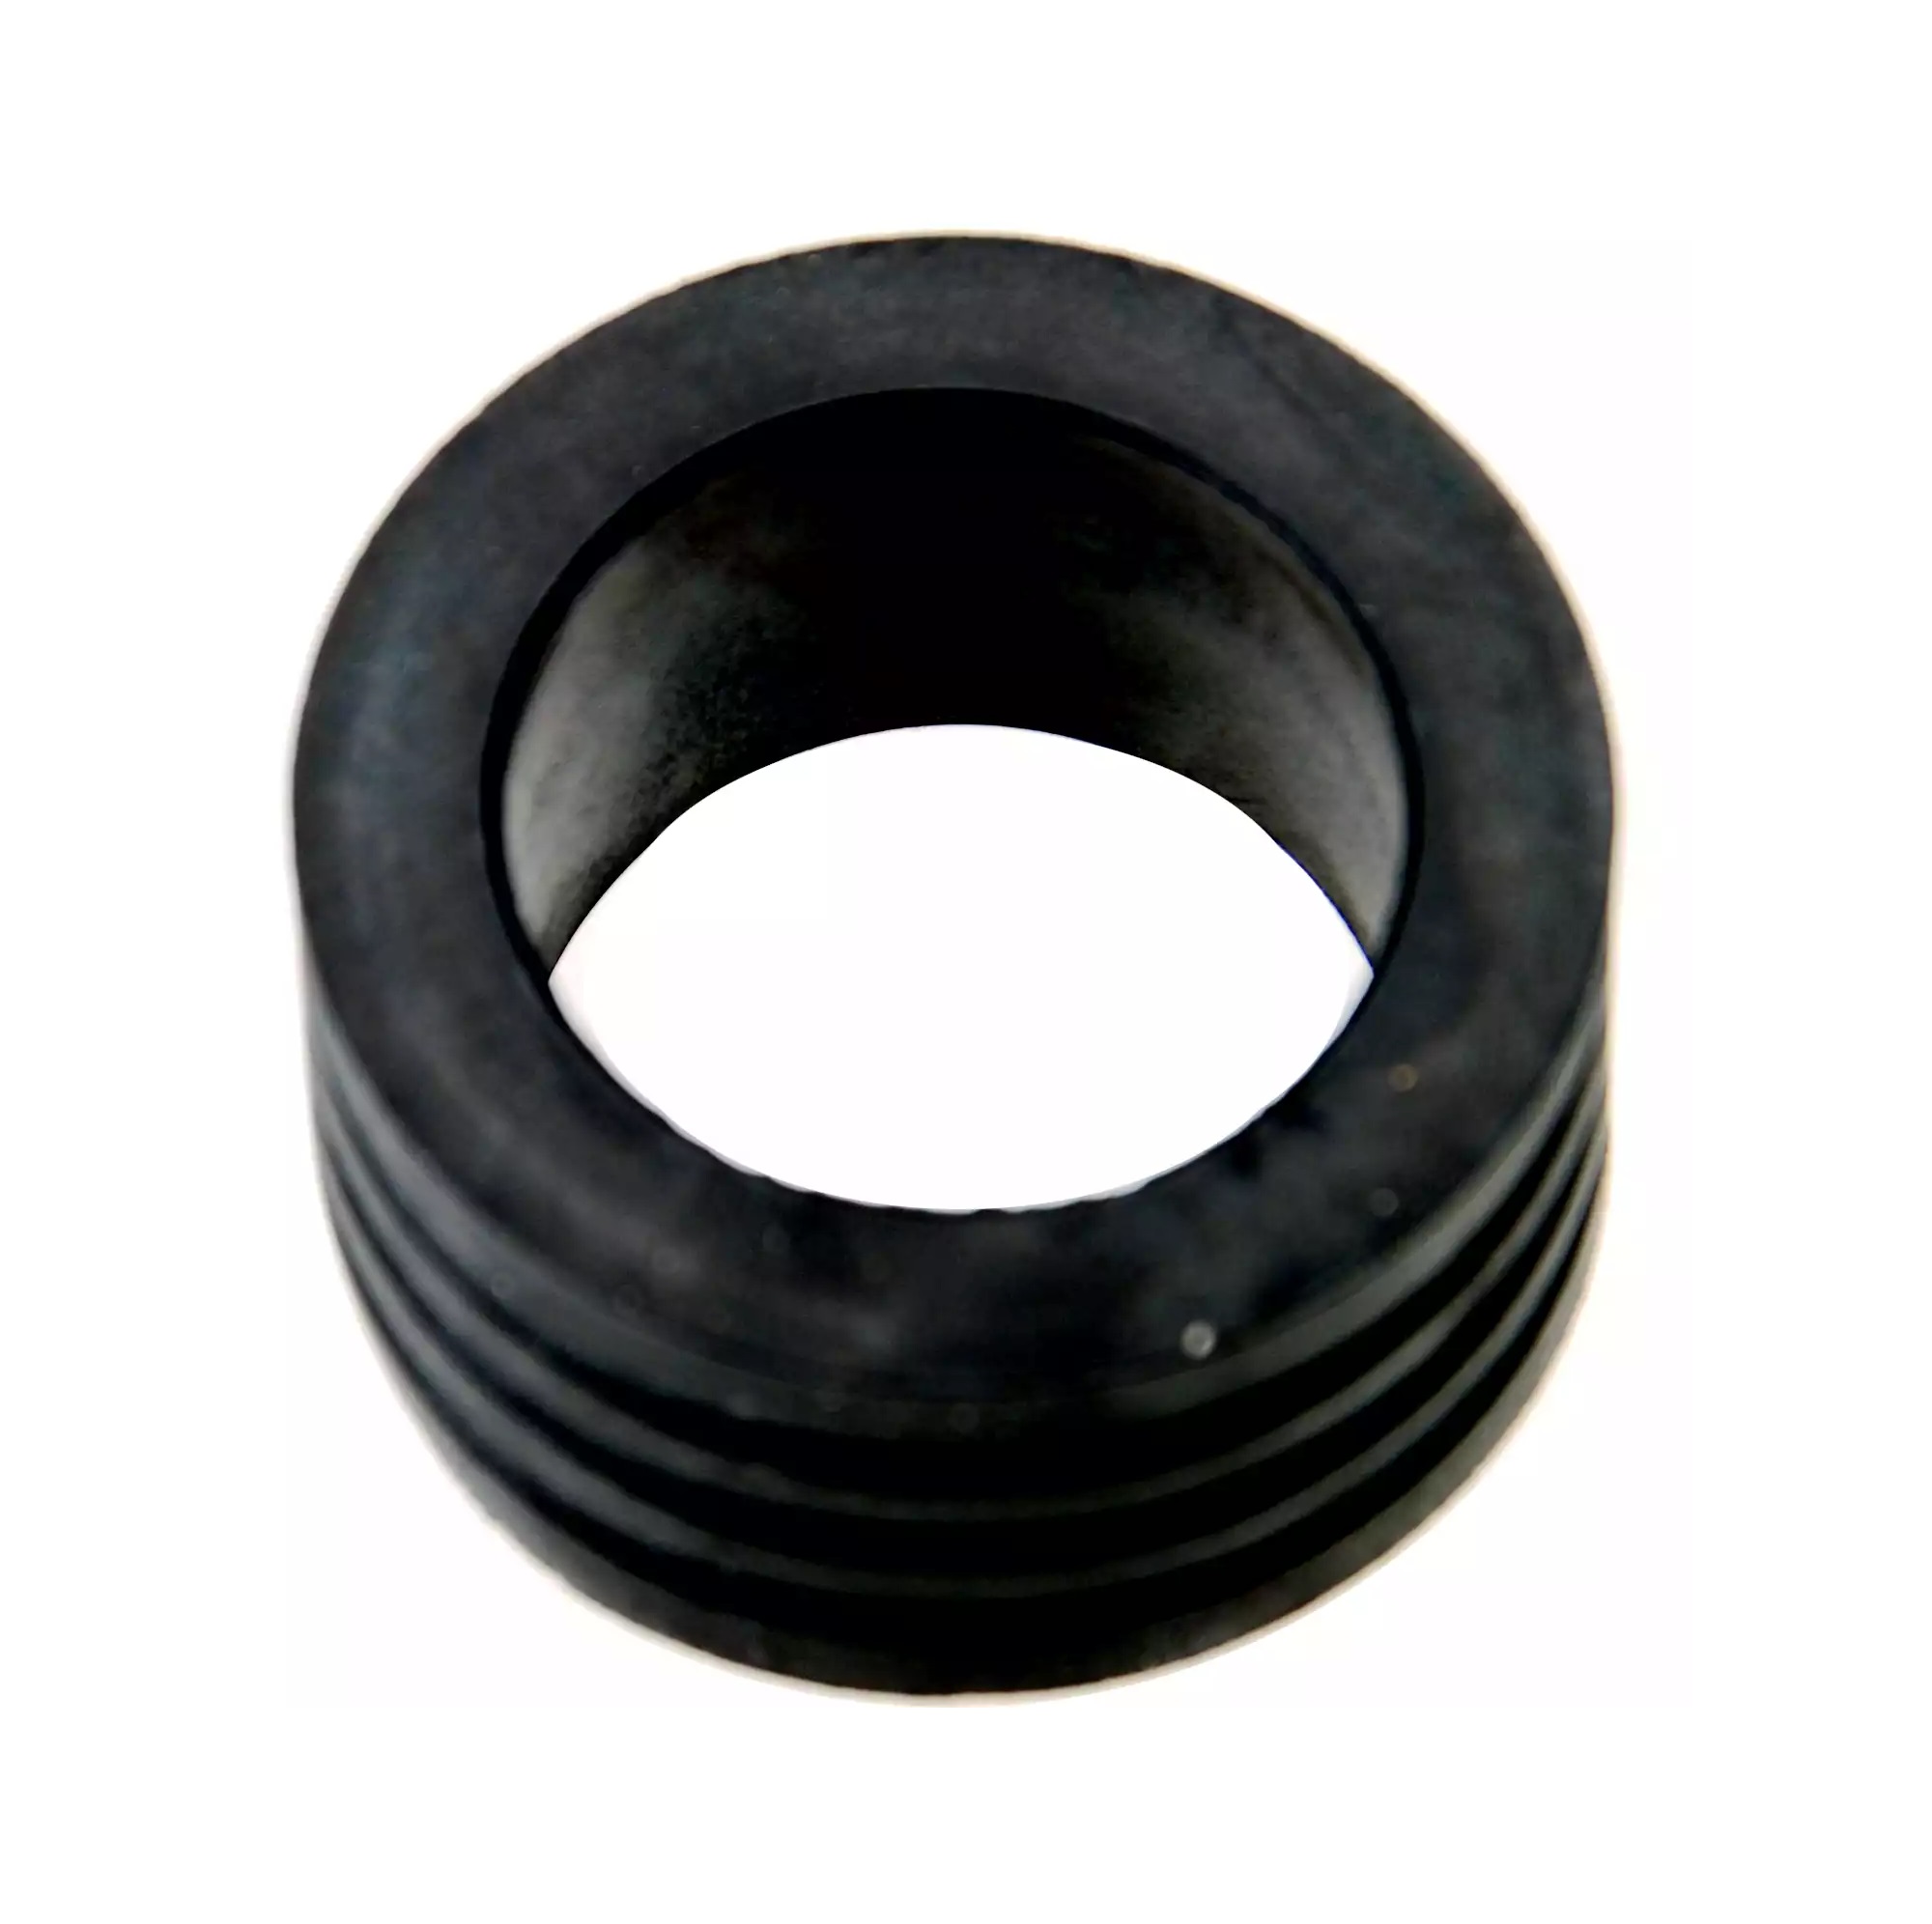 Krúžok gumový pre univerzálny adaptér na testovanie chladiaceho systému, 45 - 50 mm, BGS 8599-3